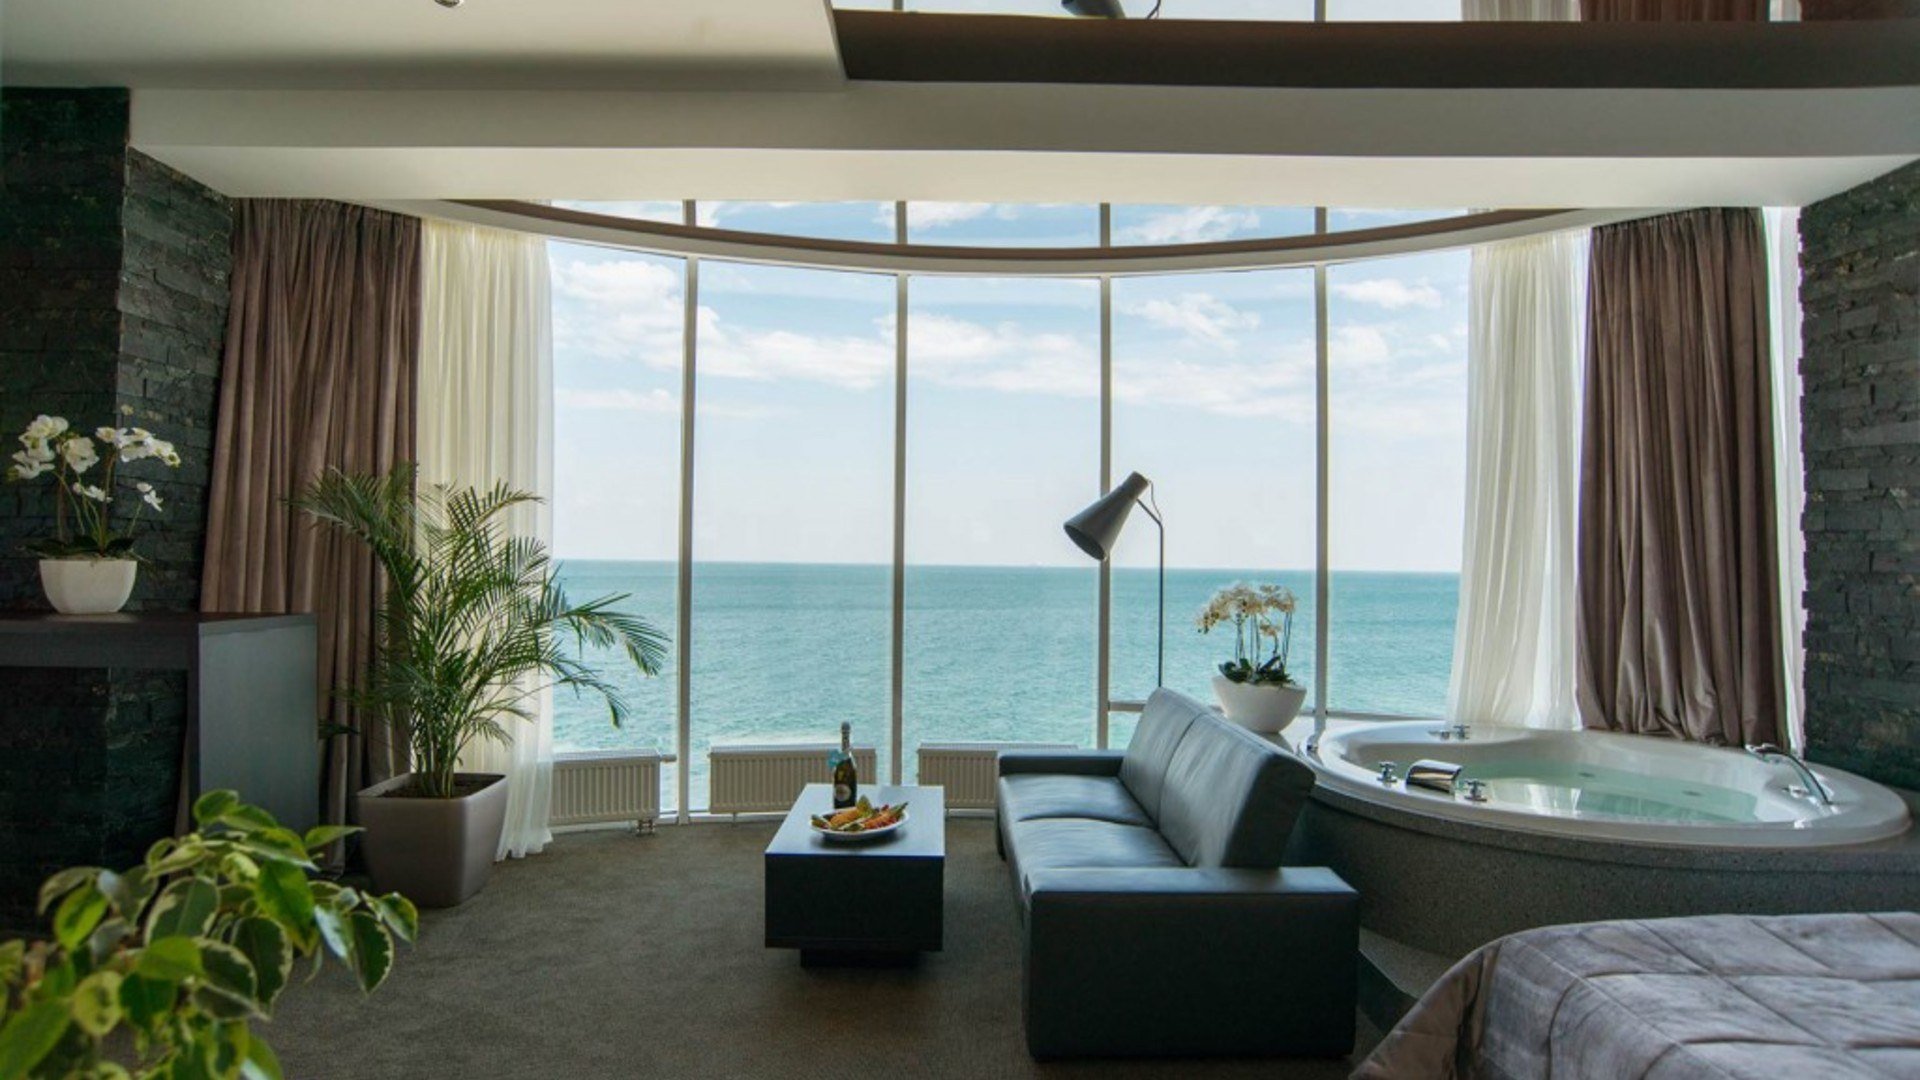 Поиск жилья на море. Отель с панорамным видом на море. Интерьер с видом на море. Море с отелем. Панорамные окна с видом на море.